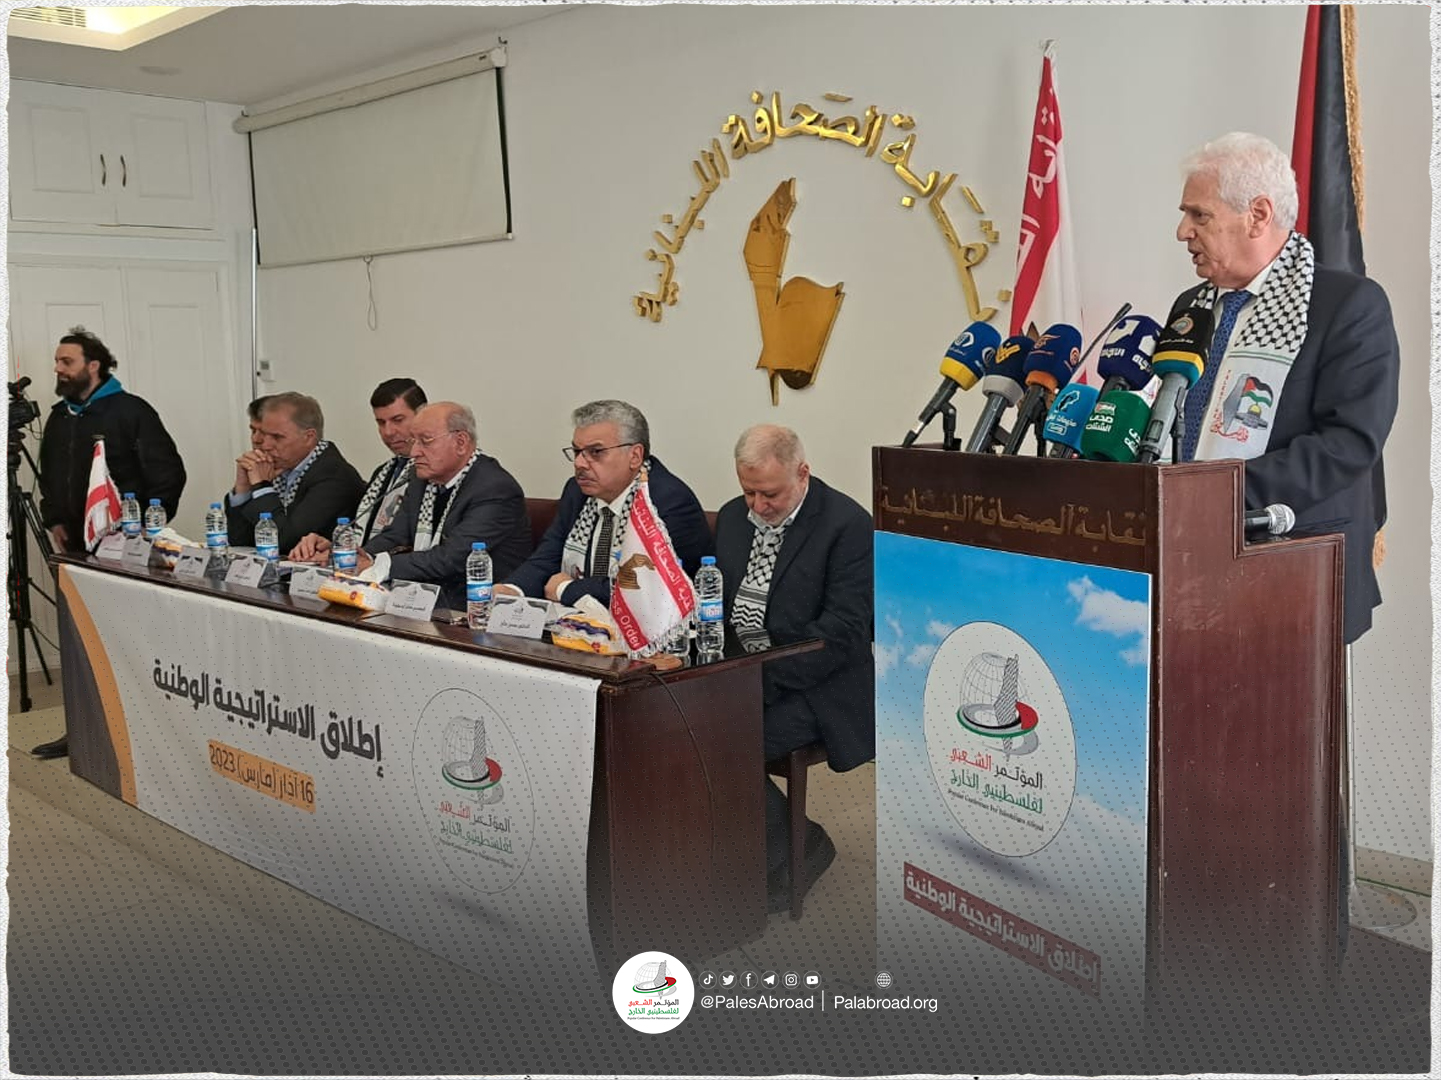  المؤتمر الشعبي لفلسطينيي الخارج يطلق مبادرة الاستراتيجية الوطنية 